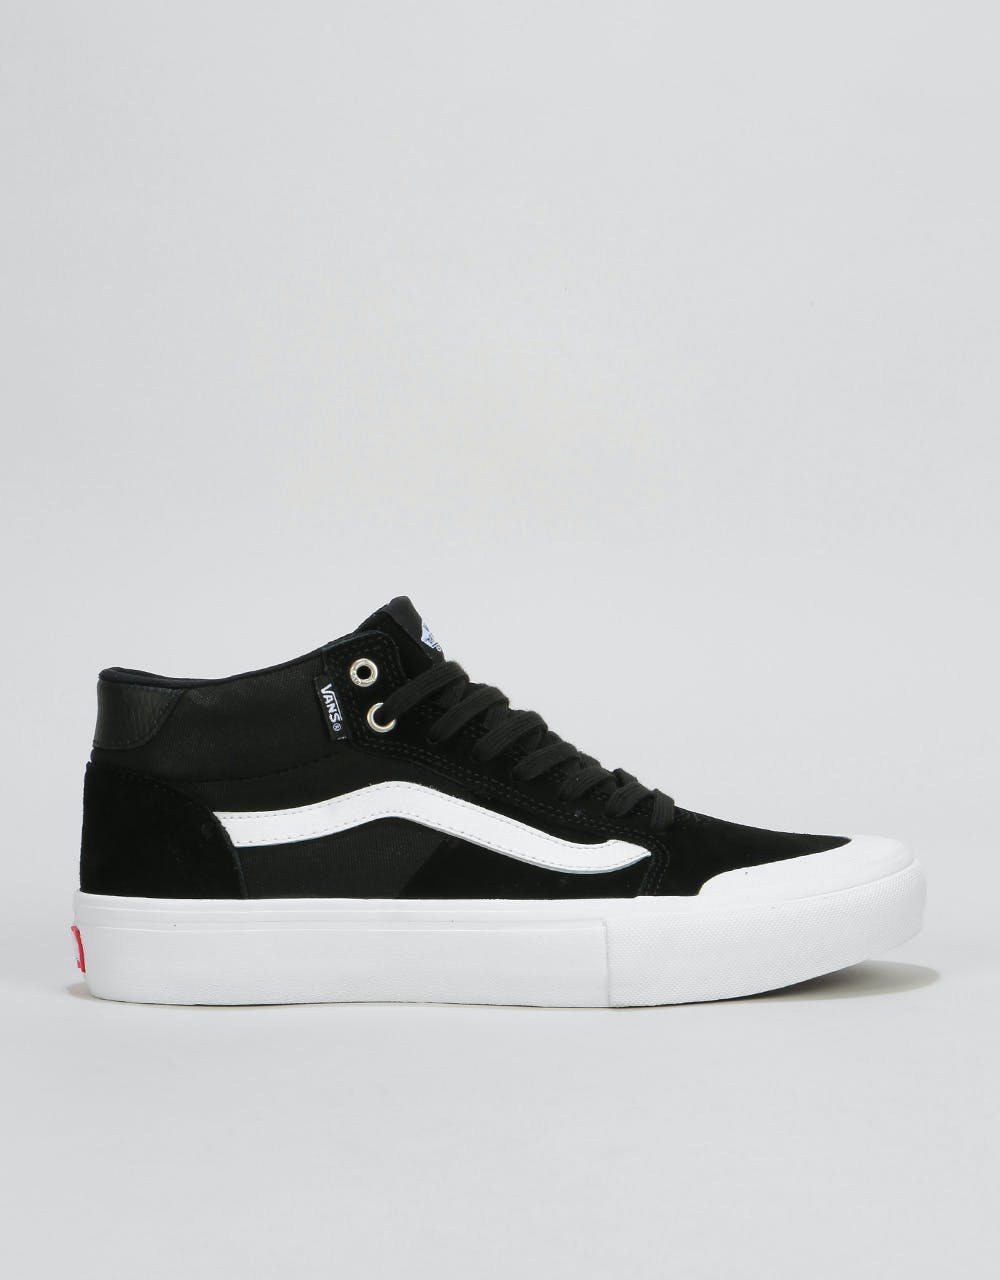 Vans Style 112 Mid Skate Shoes - Black/White